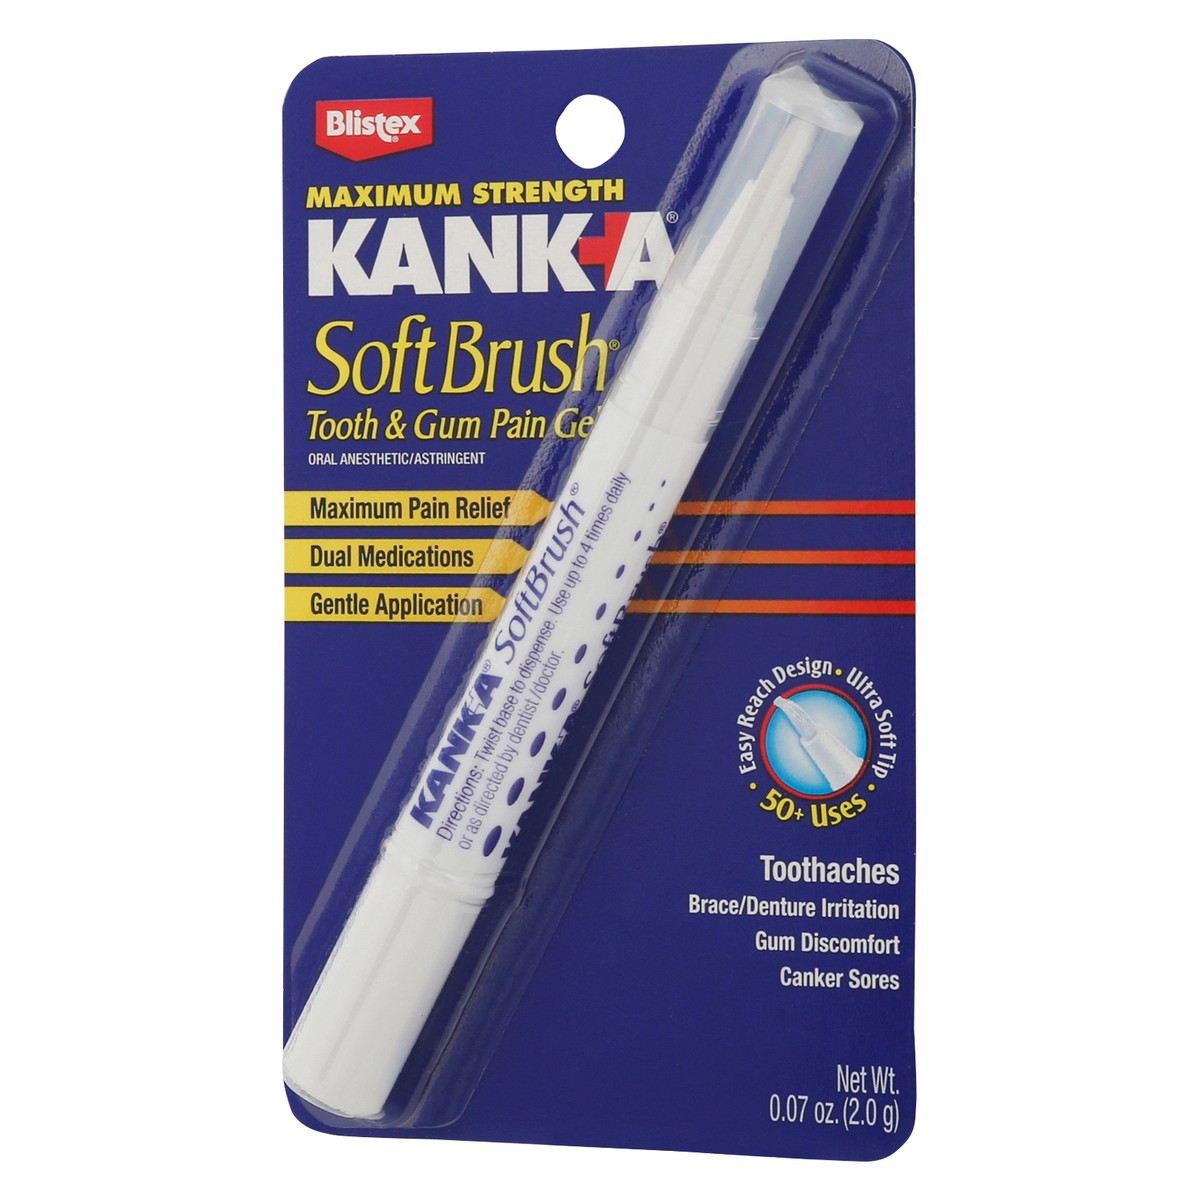 slide 3 of 9, KANK-A Kank A Softbrush Kanka Softbrush Pain Gel, 0.07 oz